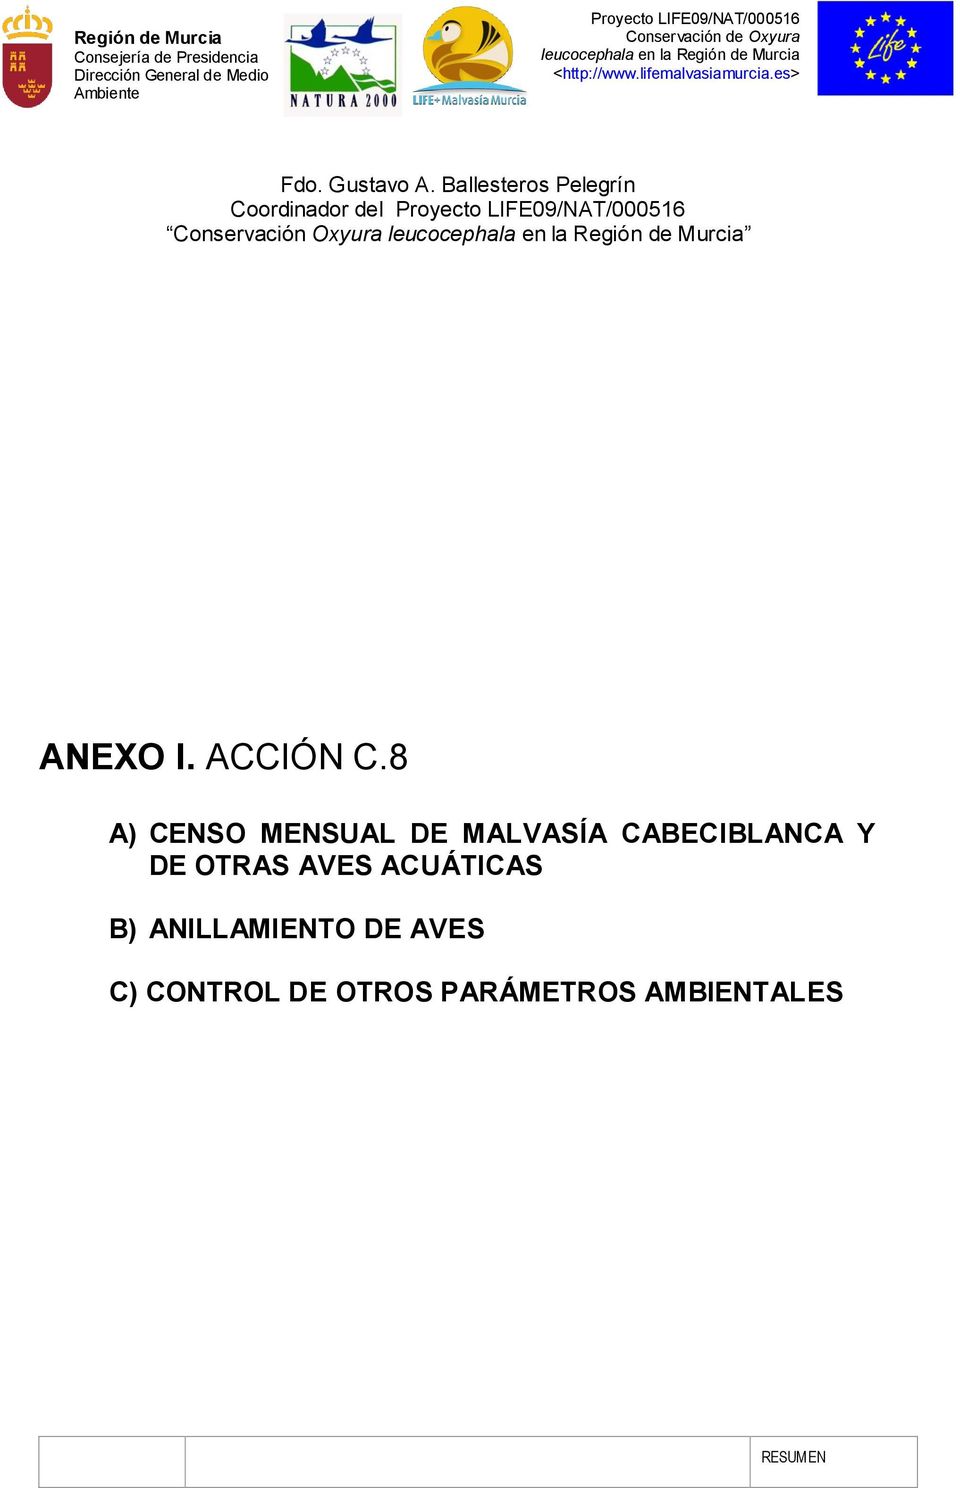 ANEXO I. ACCIÓN C.